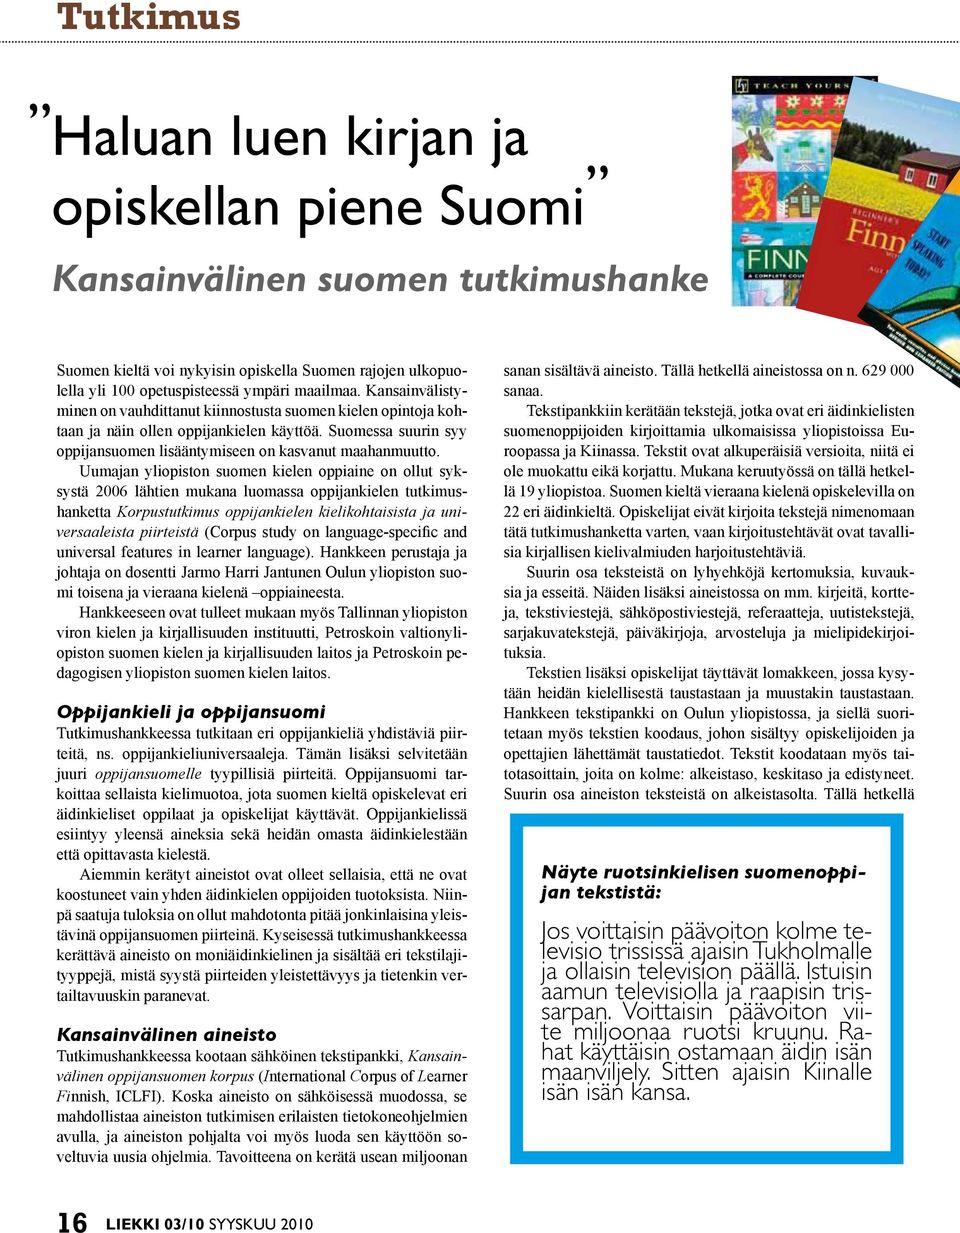 Uumajan yliopiston suomen kielen oppiaine on ollut syksystä 2006 lähtien mukana luomassa oppijankielen tutkimushanketta Korpustutkimus oppijankielen kielikohtaisista ja universaaleista piirteistä